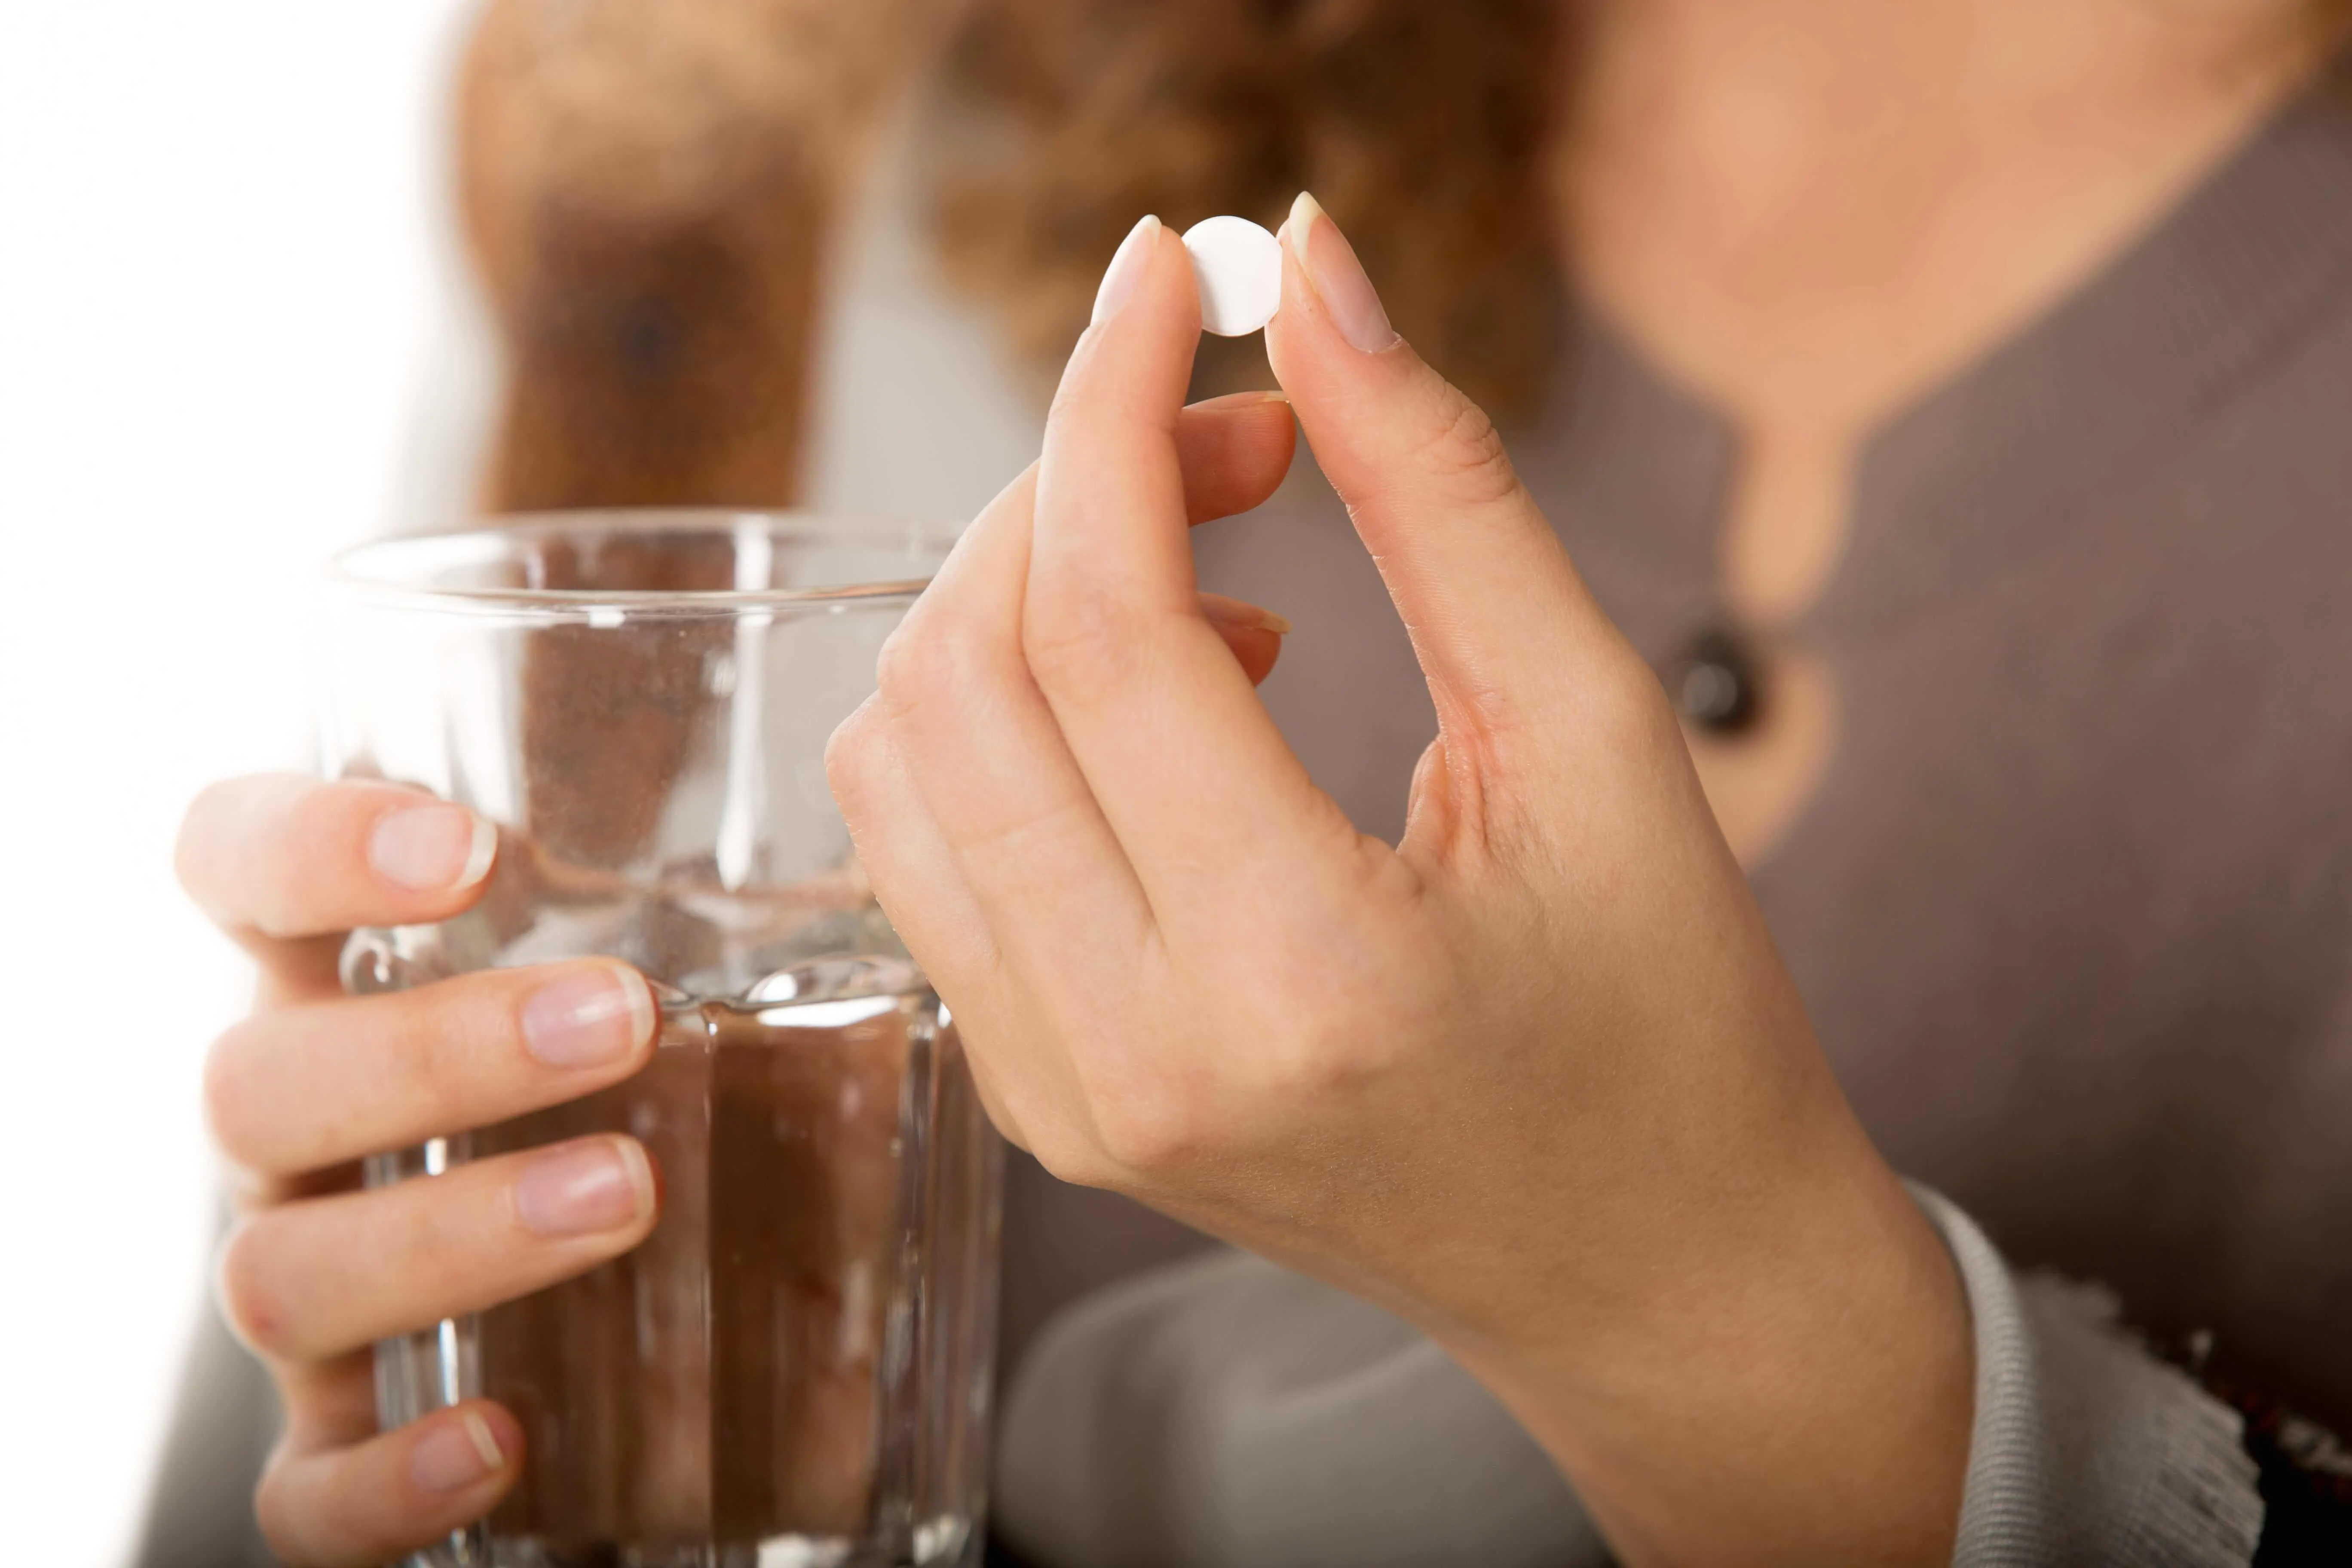 Mulher segurando um copo com água na mão direita e entre os dedos da mão esquerda um comprimido de remédio.